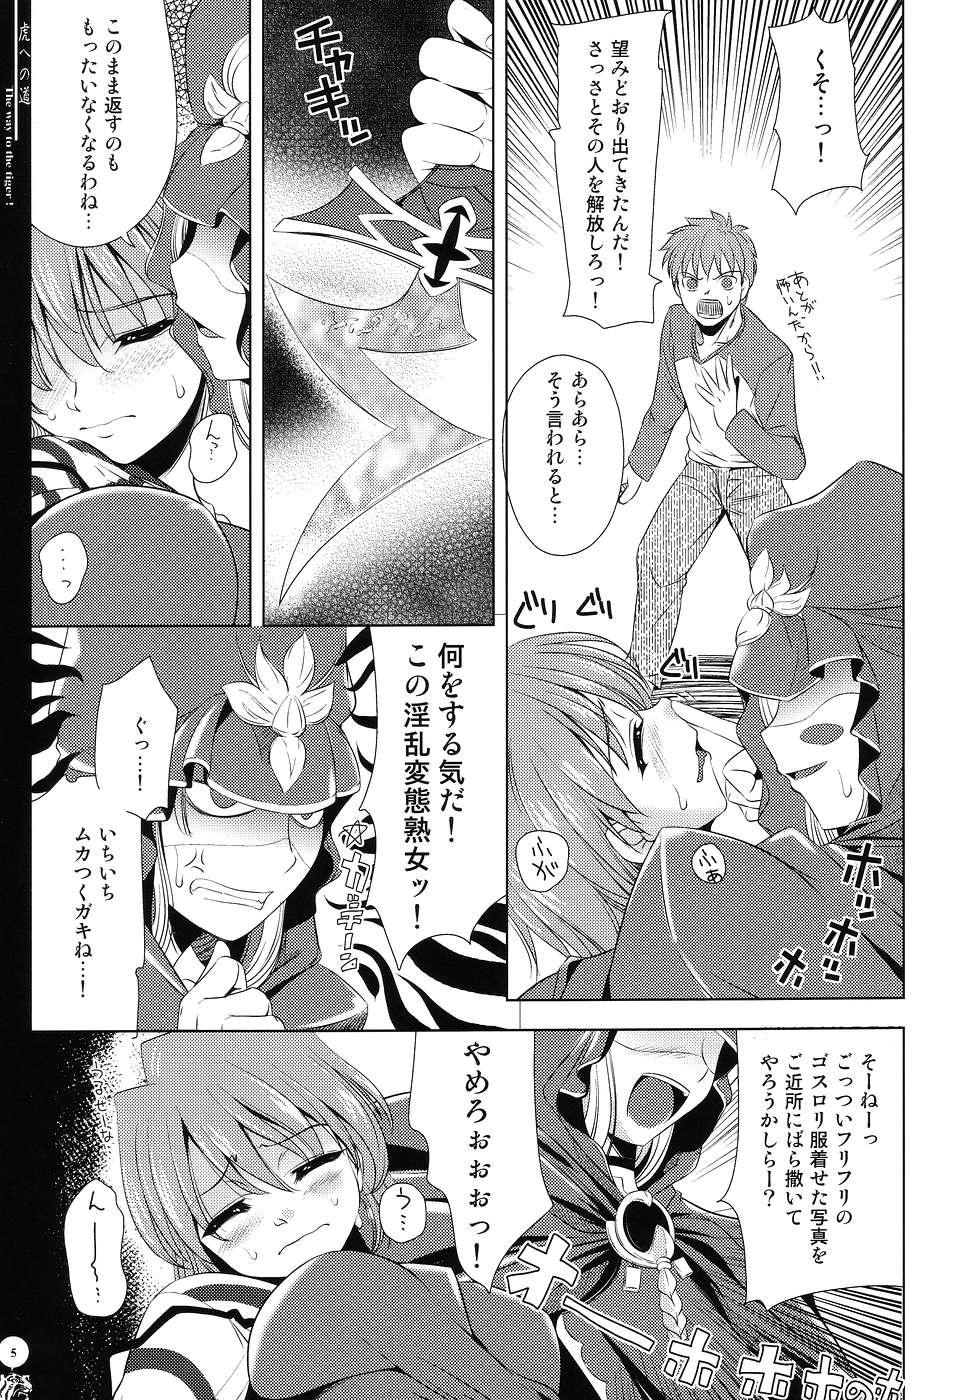 Asses Tora e no Michi - Fate stay night Rubdown - Page 4